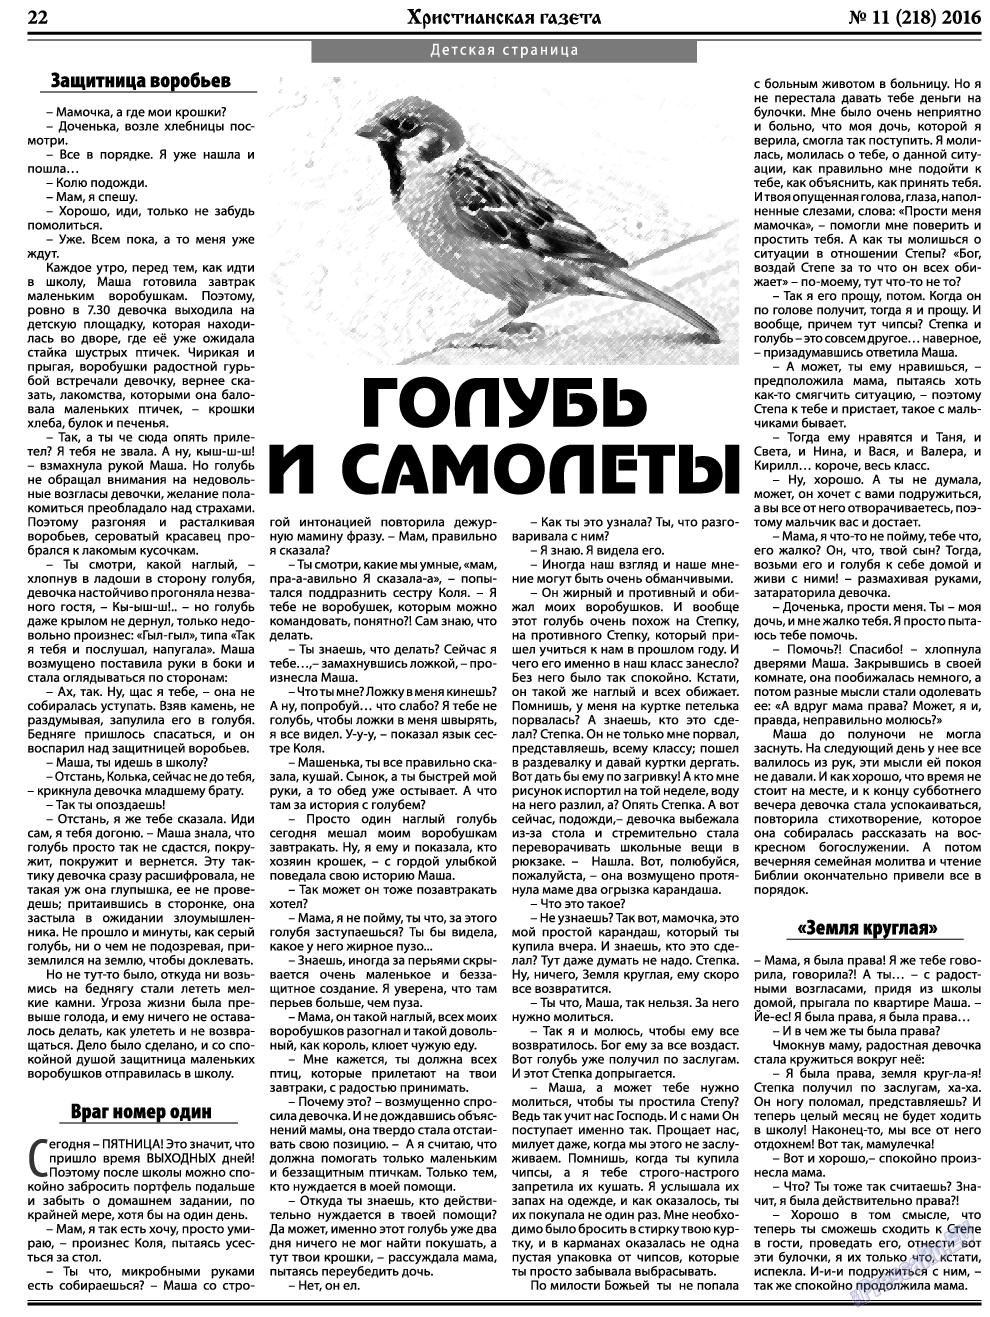 Христианская газета, газета. 2016 №11 стр.30